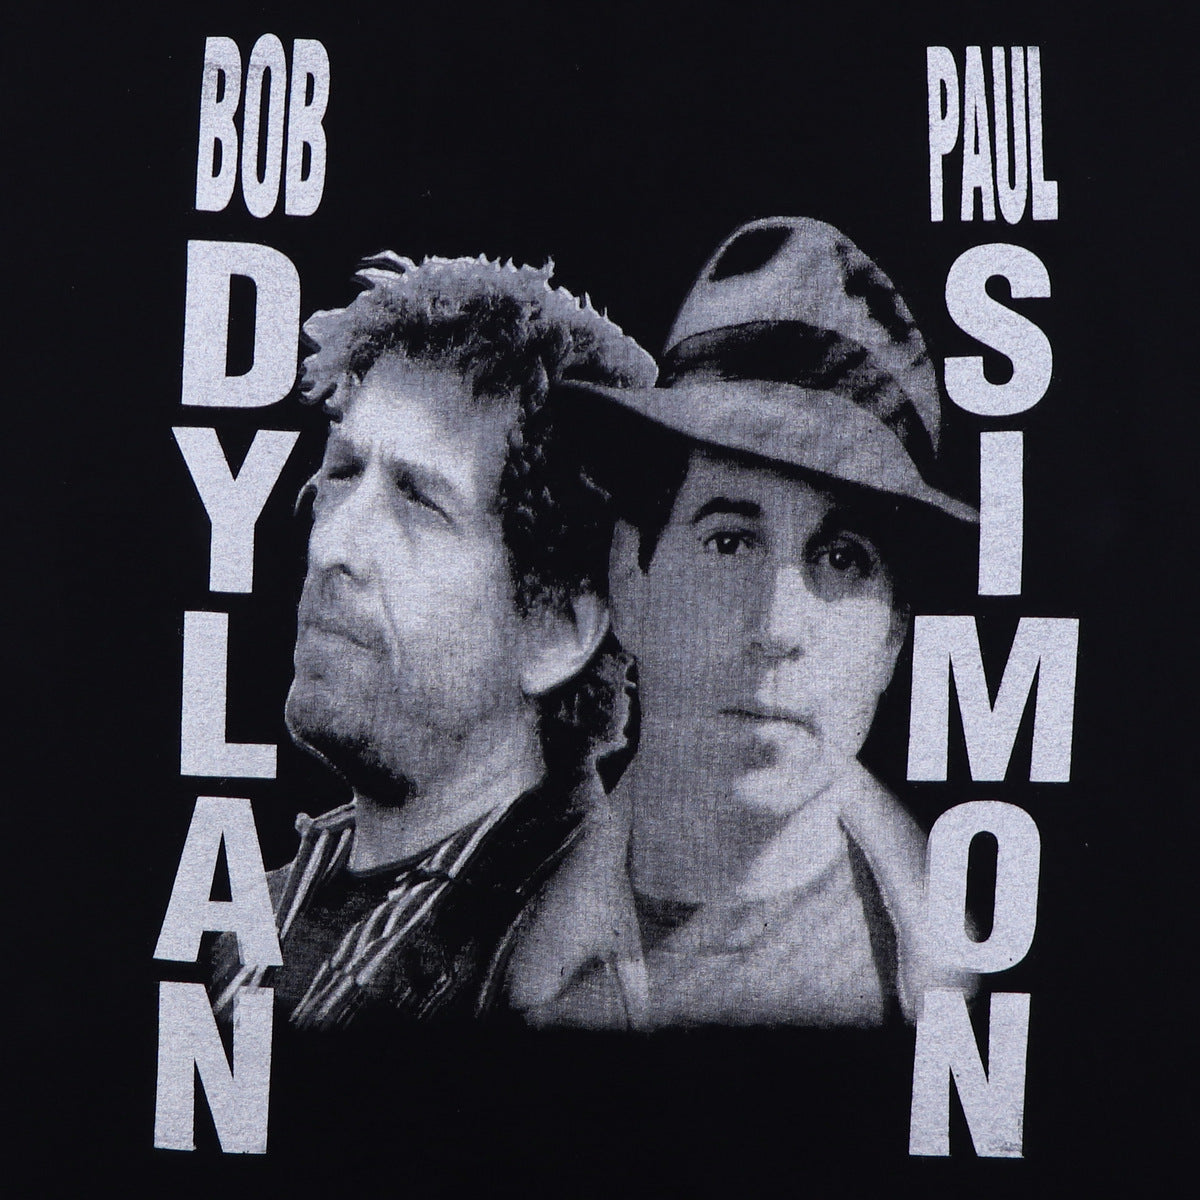 1999 Bob Dylan and Paul Simon Tour Shirt